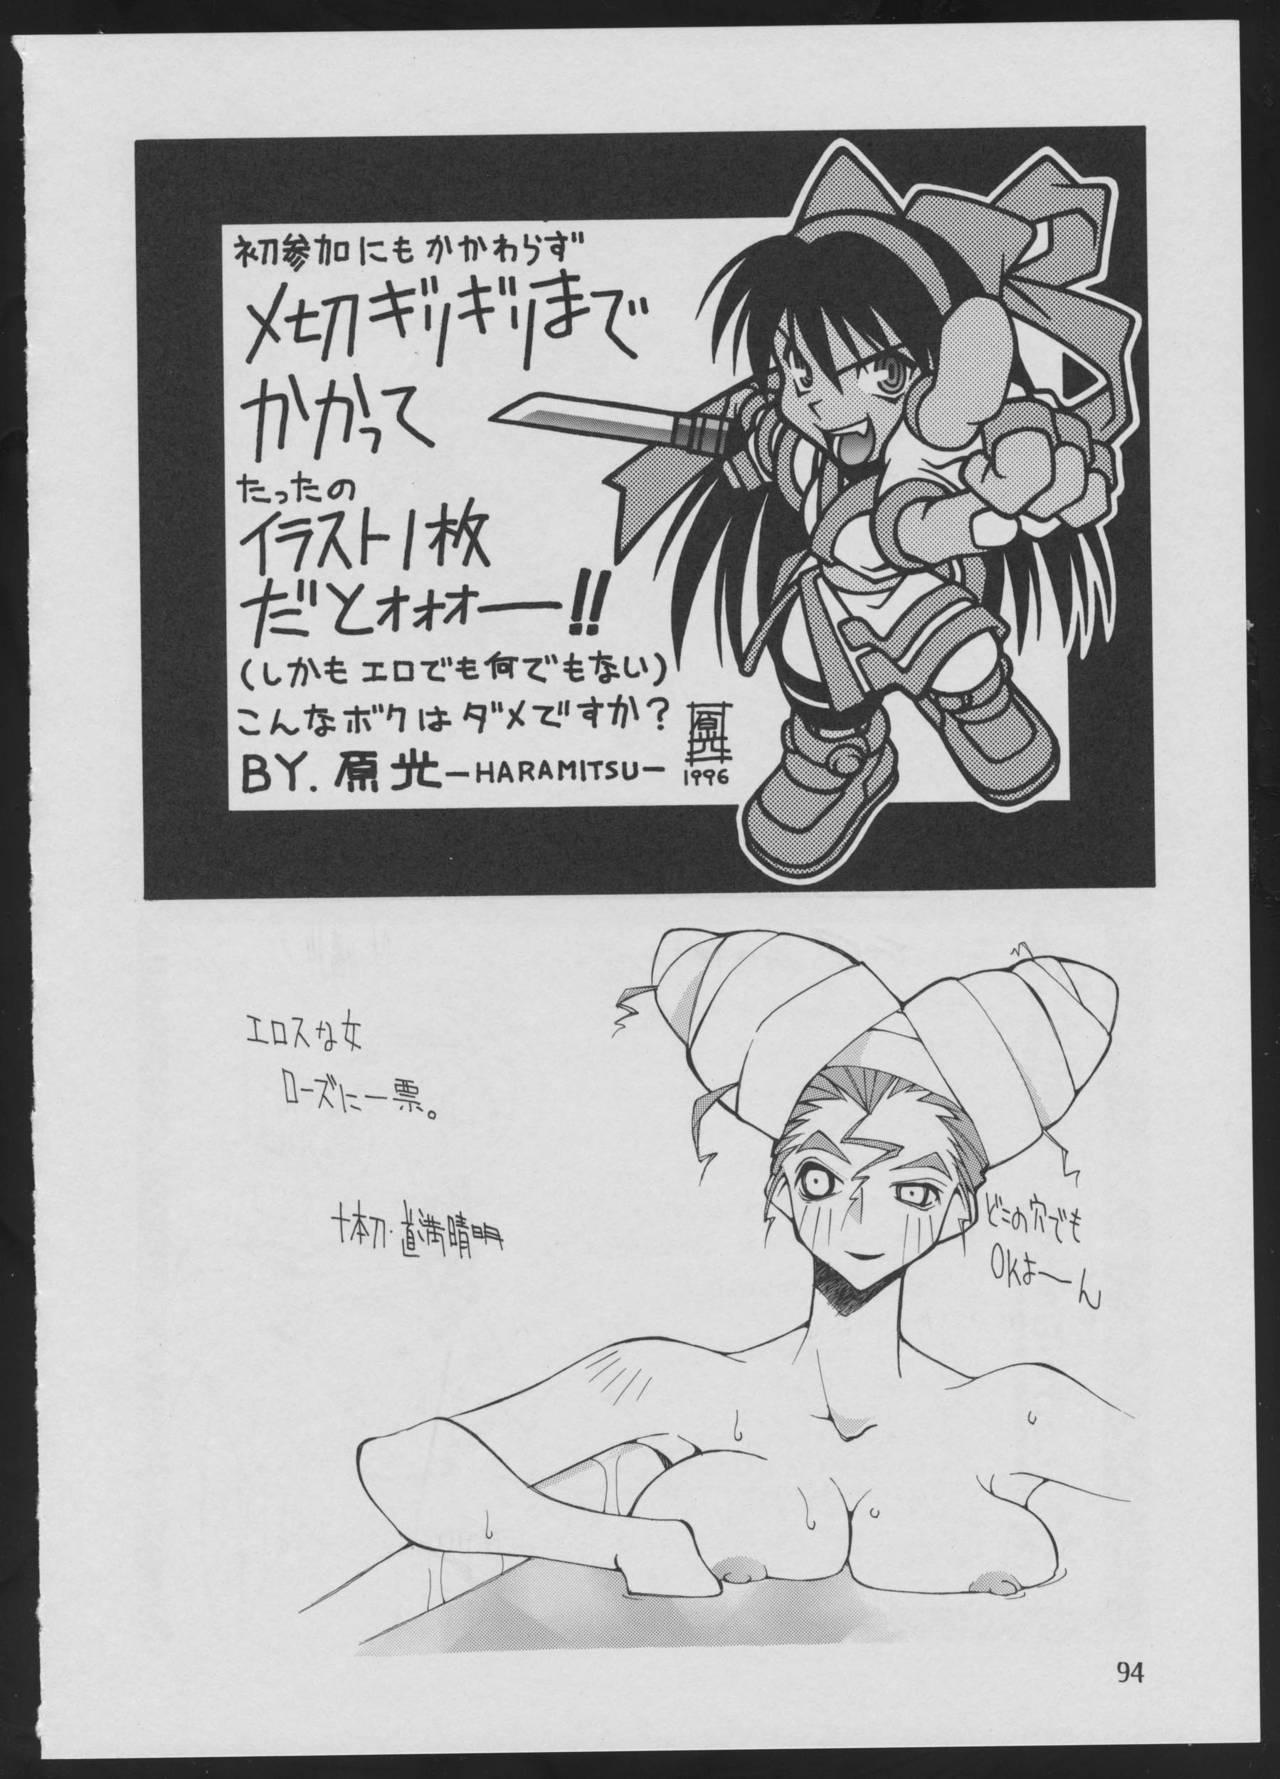 '96 Natsu no Game 18-kin Special 93